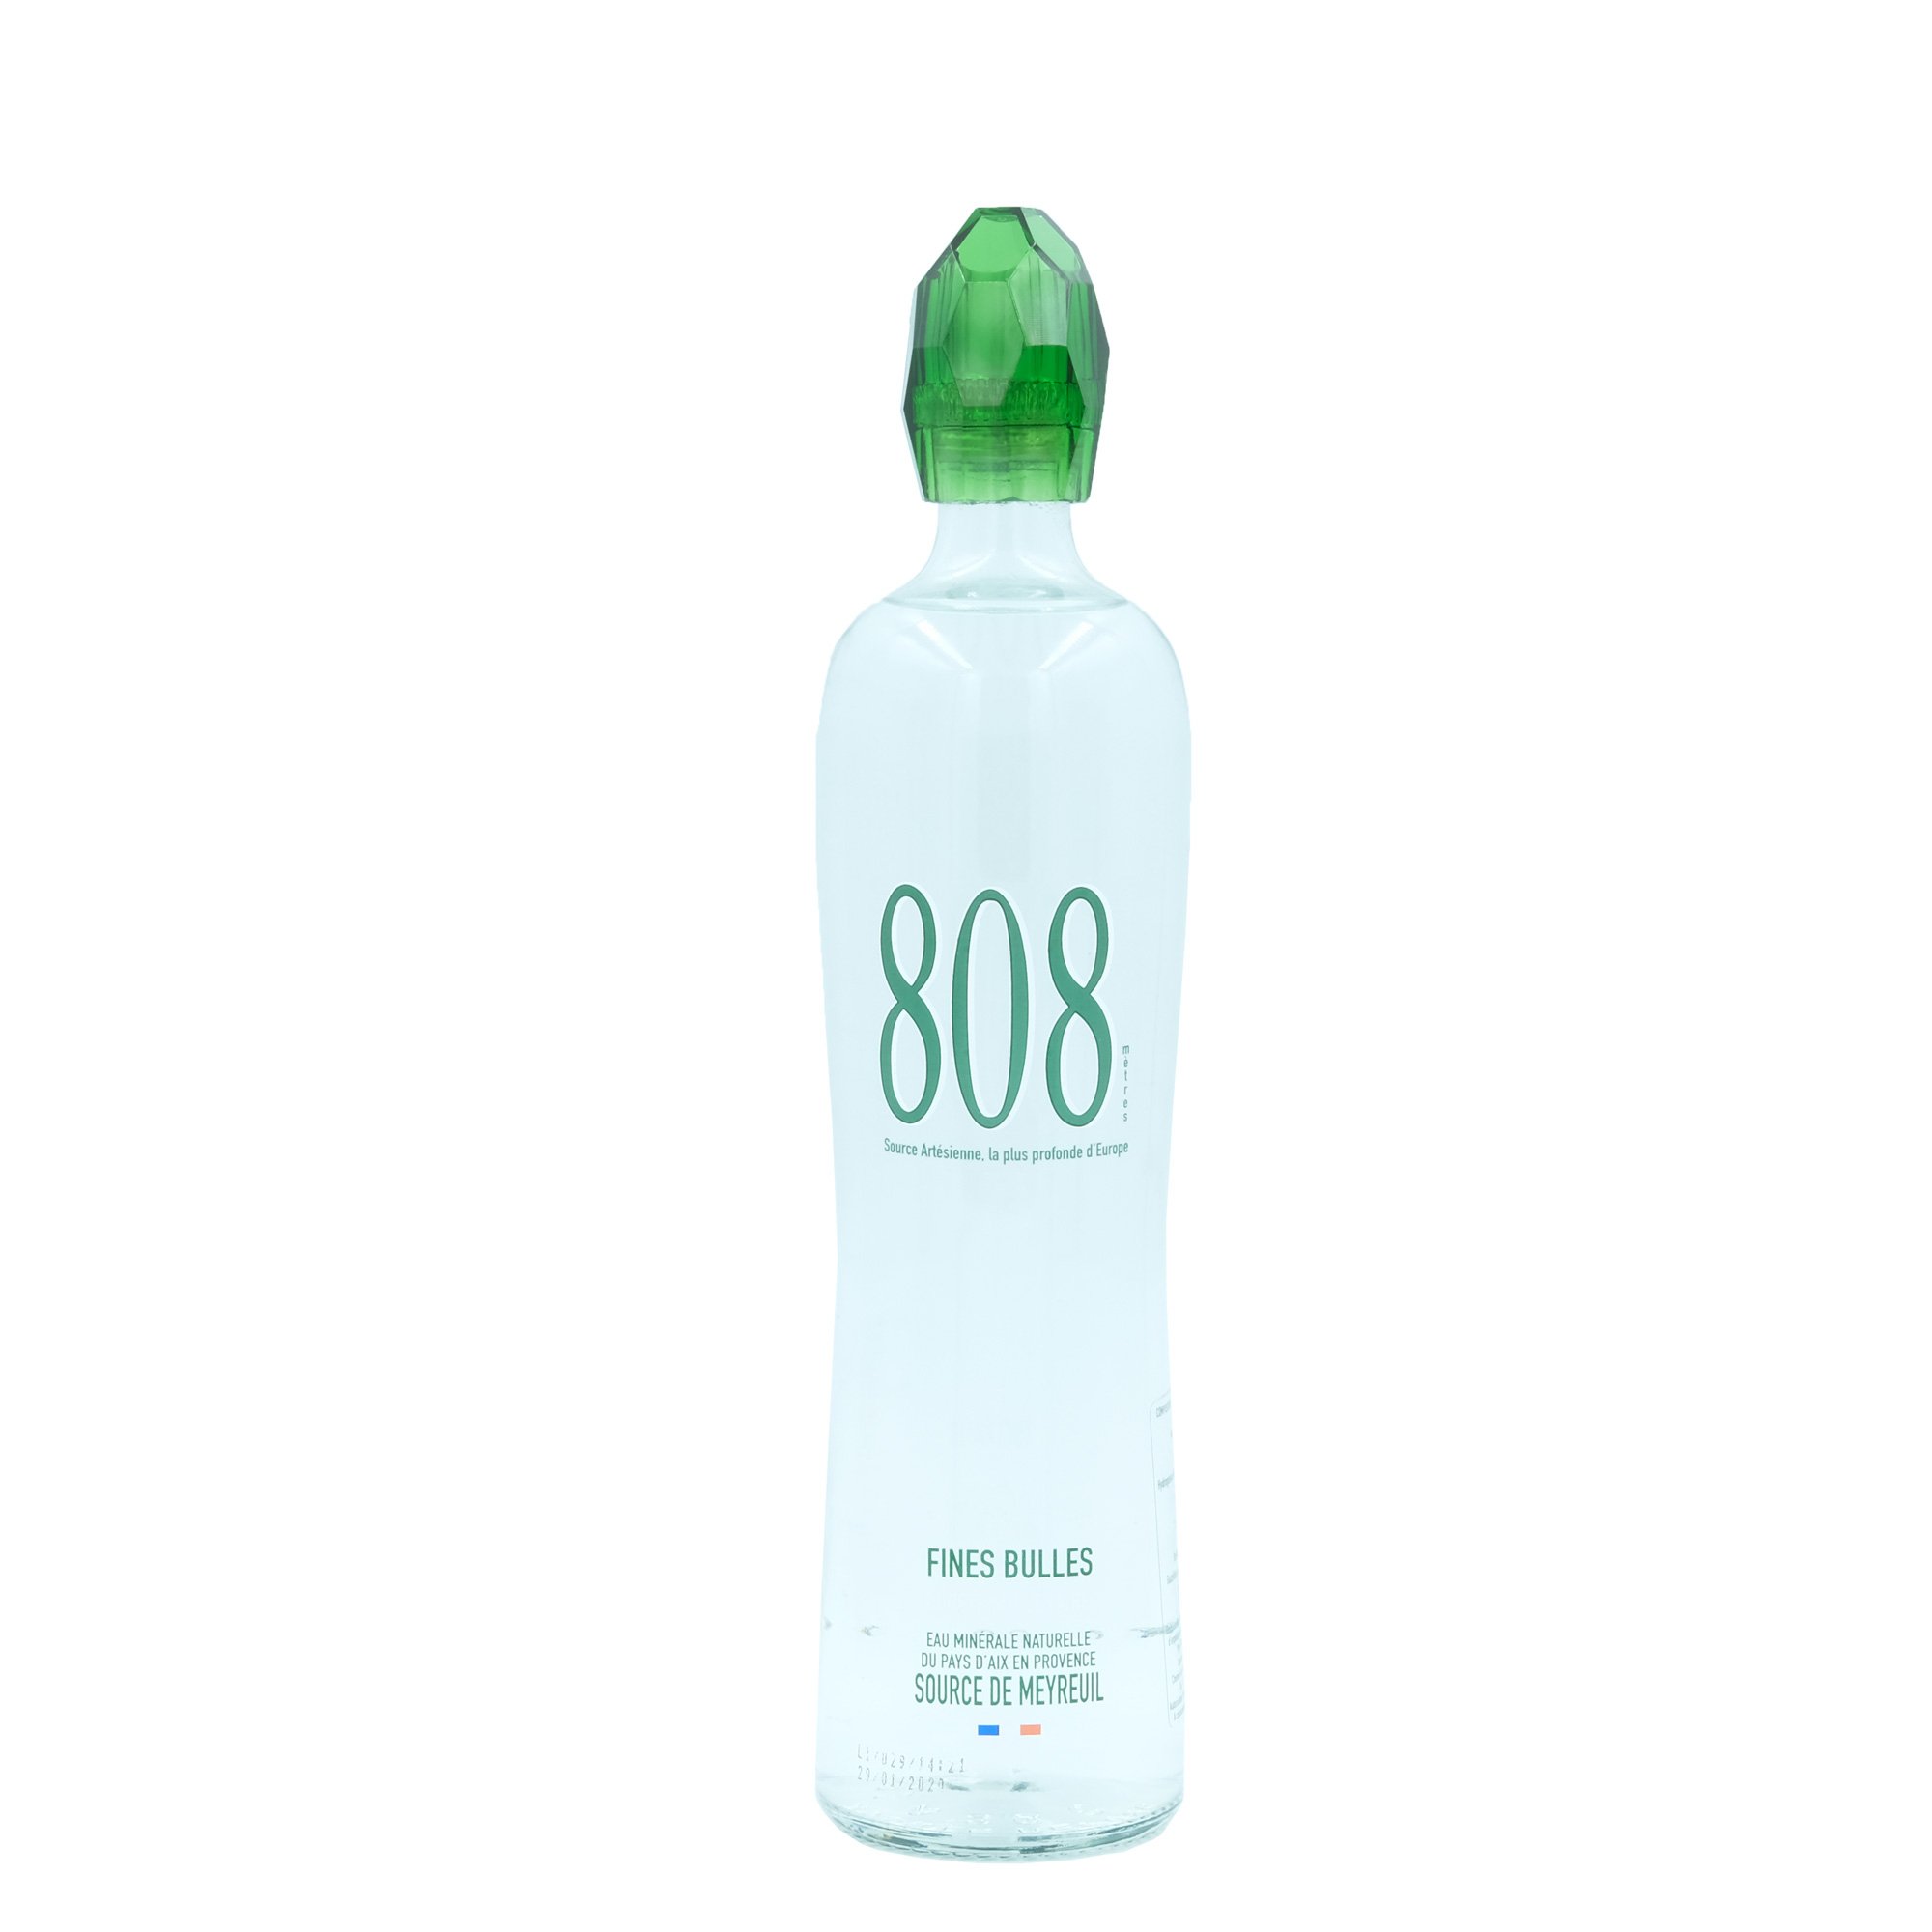 La 808, l'eau minérale naturelle aixoise qui vise l'excellence